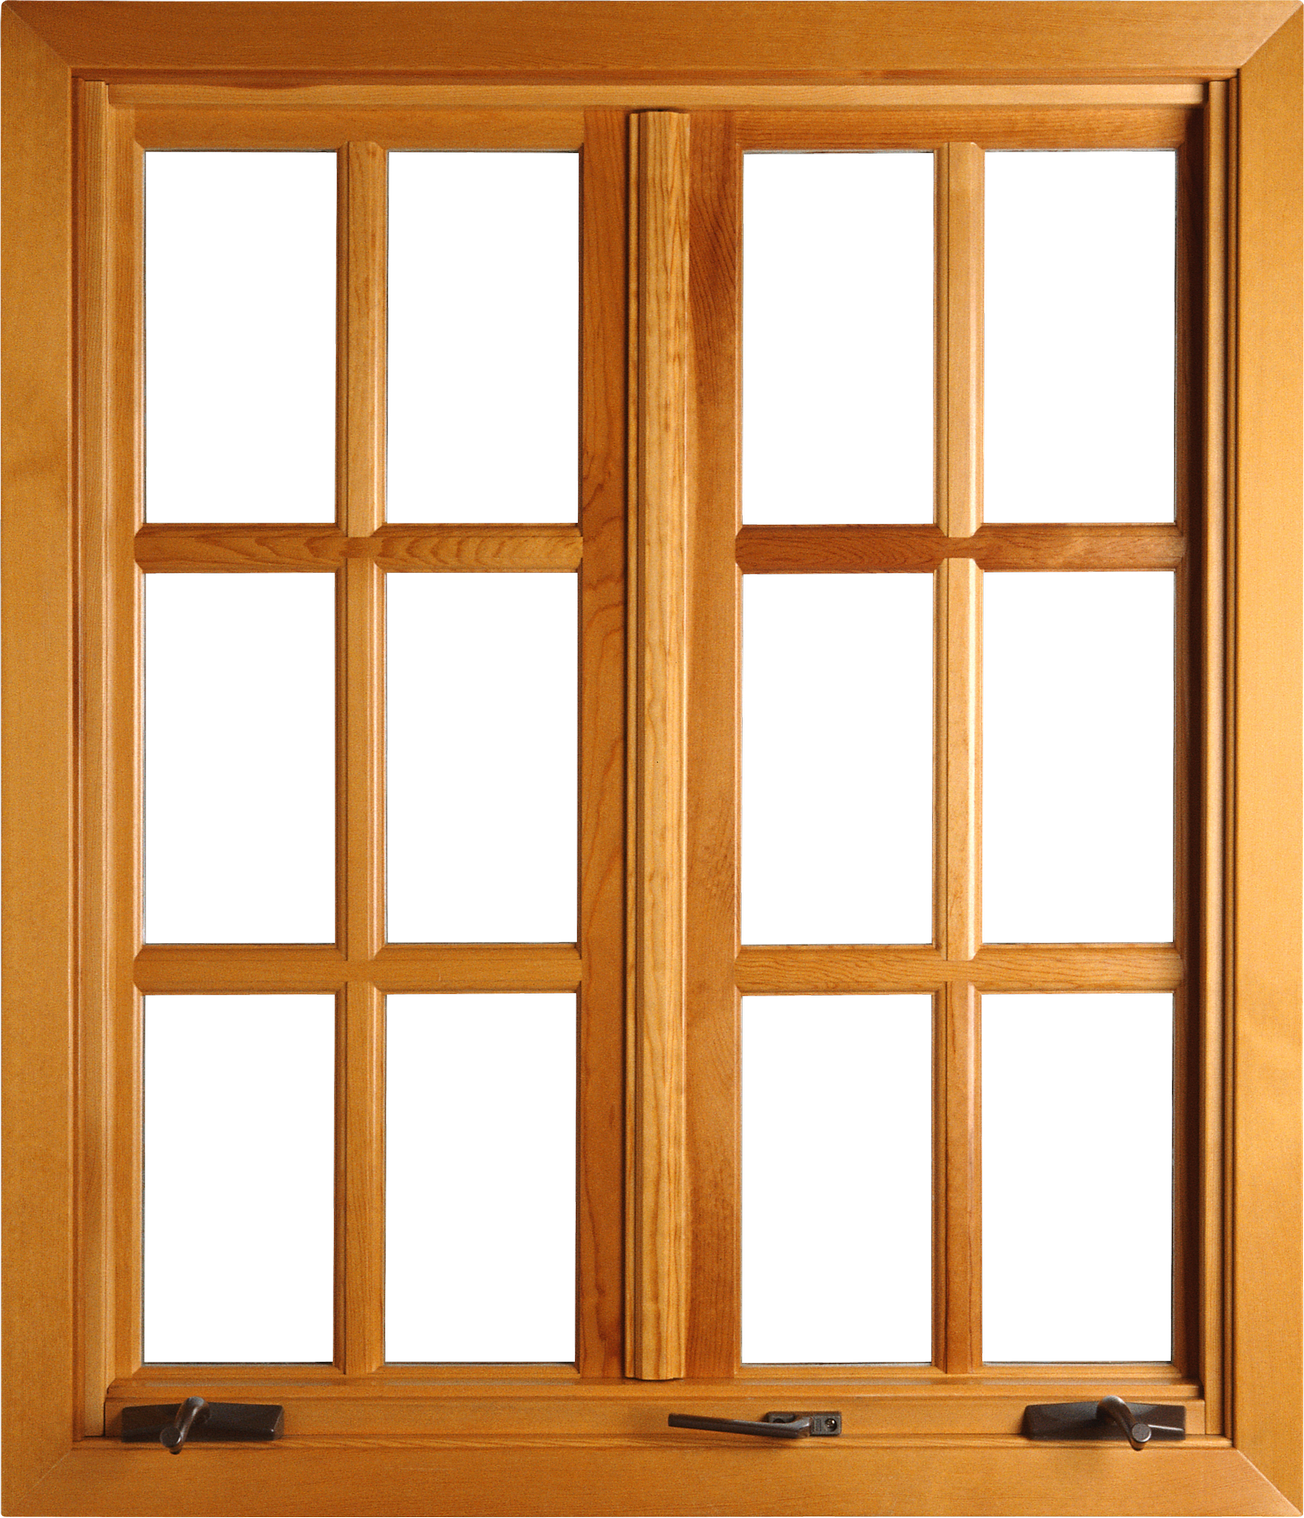 Immagine Trasparente della finestra della casa di legno